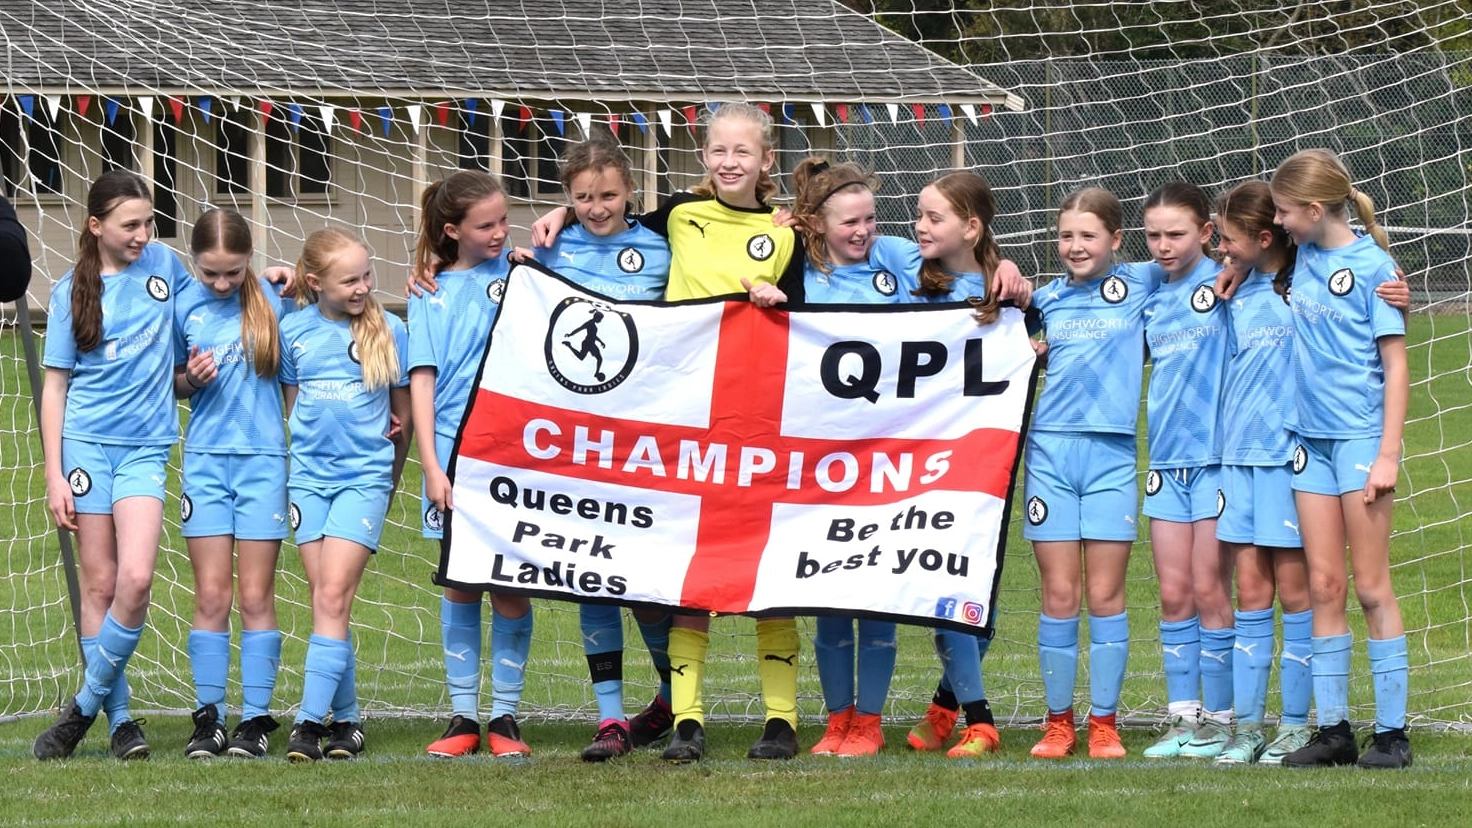 E' la storia delle Queen Park Ladies, squadra under 12 di Bournemouth, in Inghilterra, che hanno stracciato le squadre avversarie, tutte maschili, vincendo anche i pregiudizi